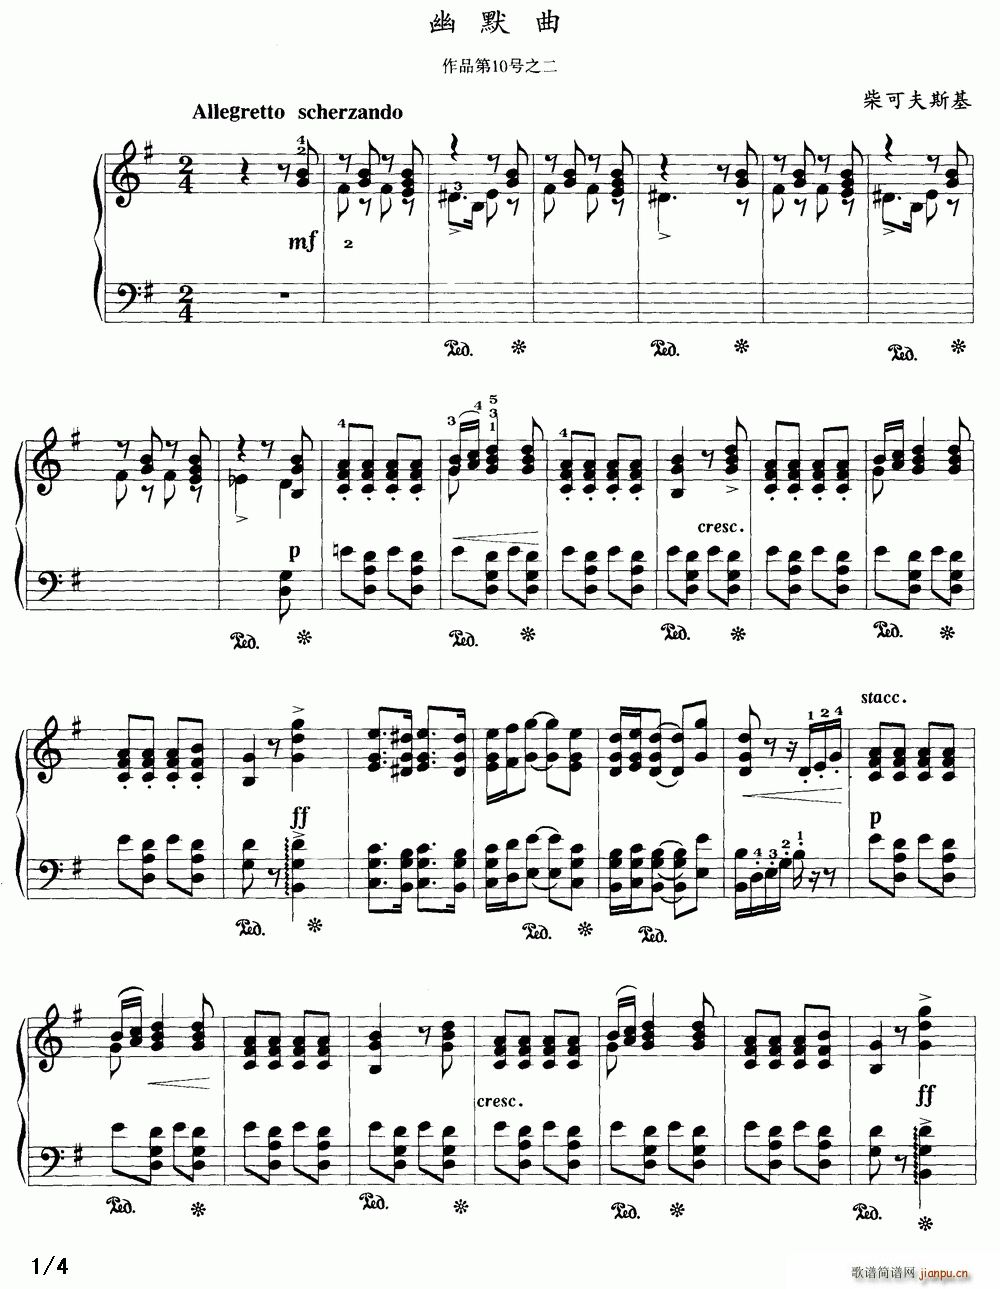 幽默曲曲谱_幽默曲小提琴独奏曲谱(2)